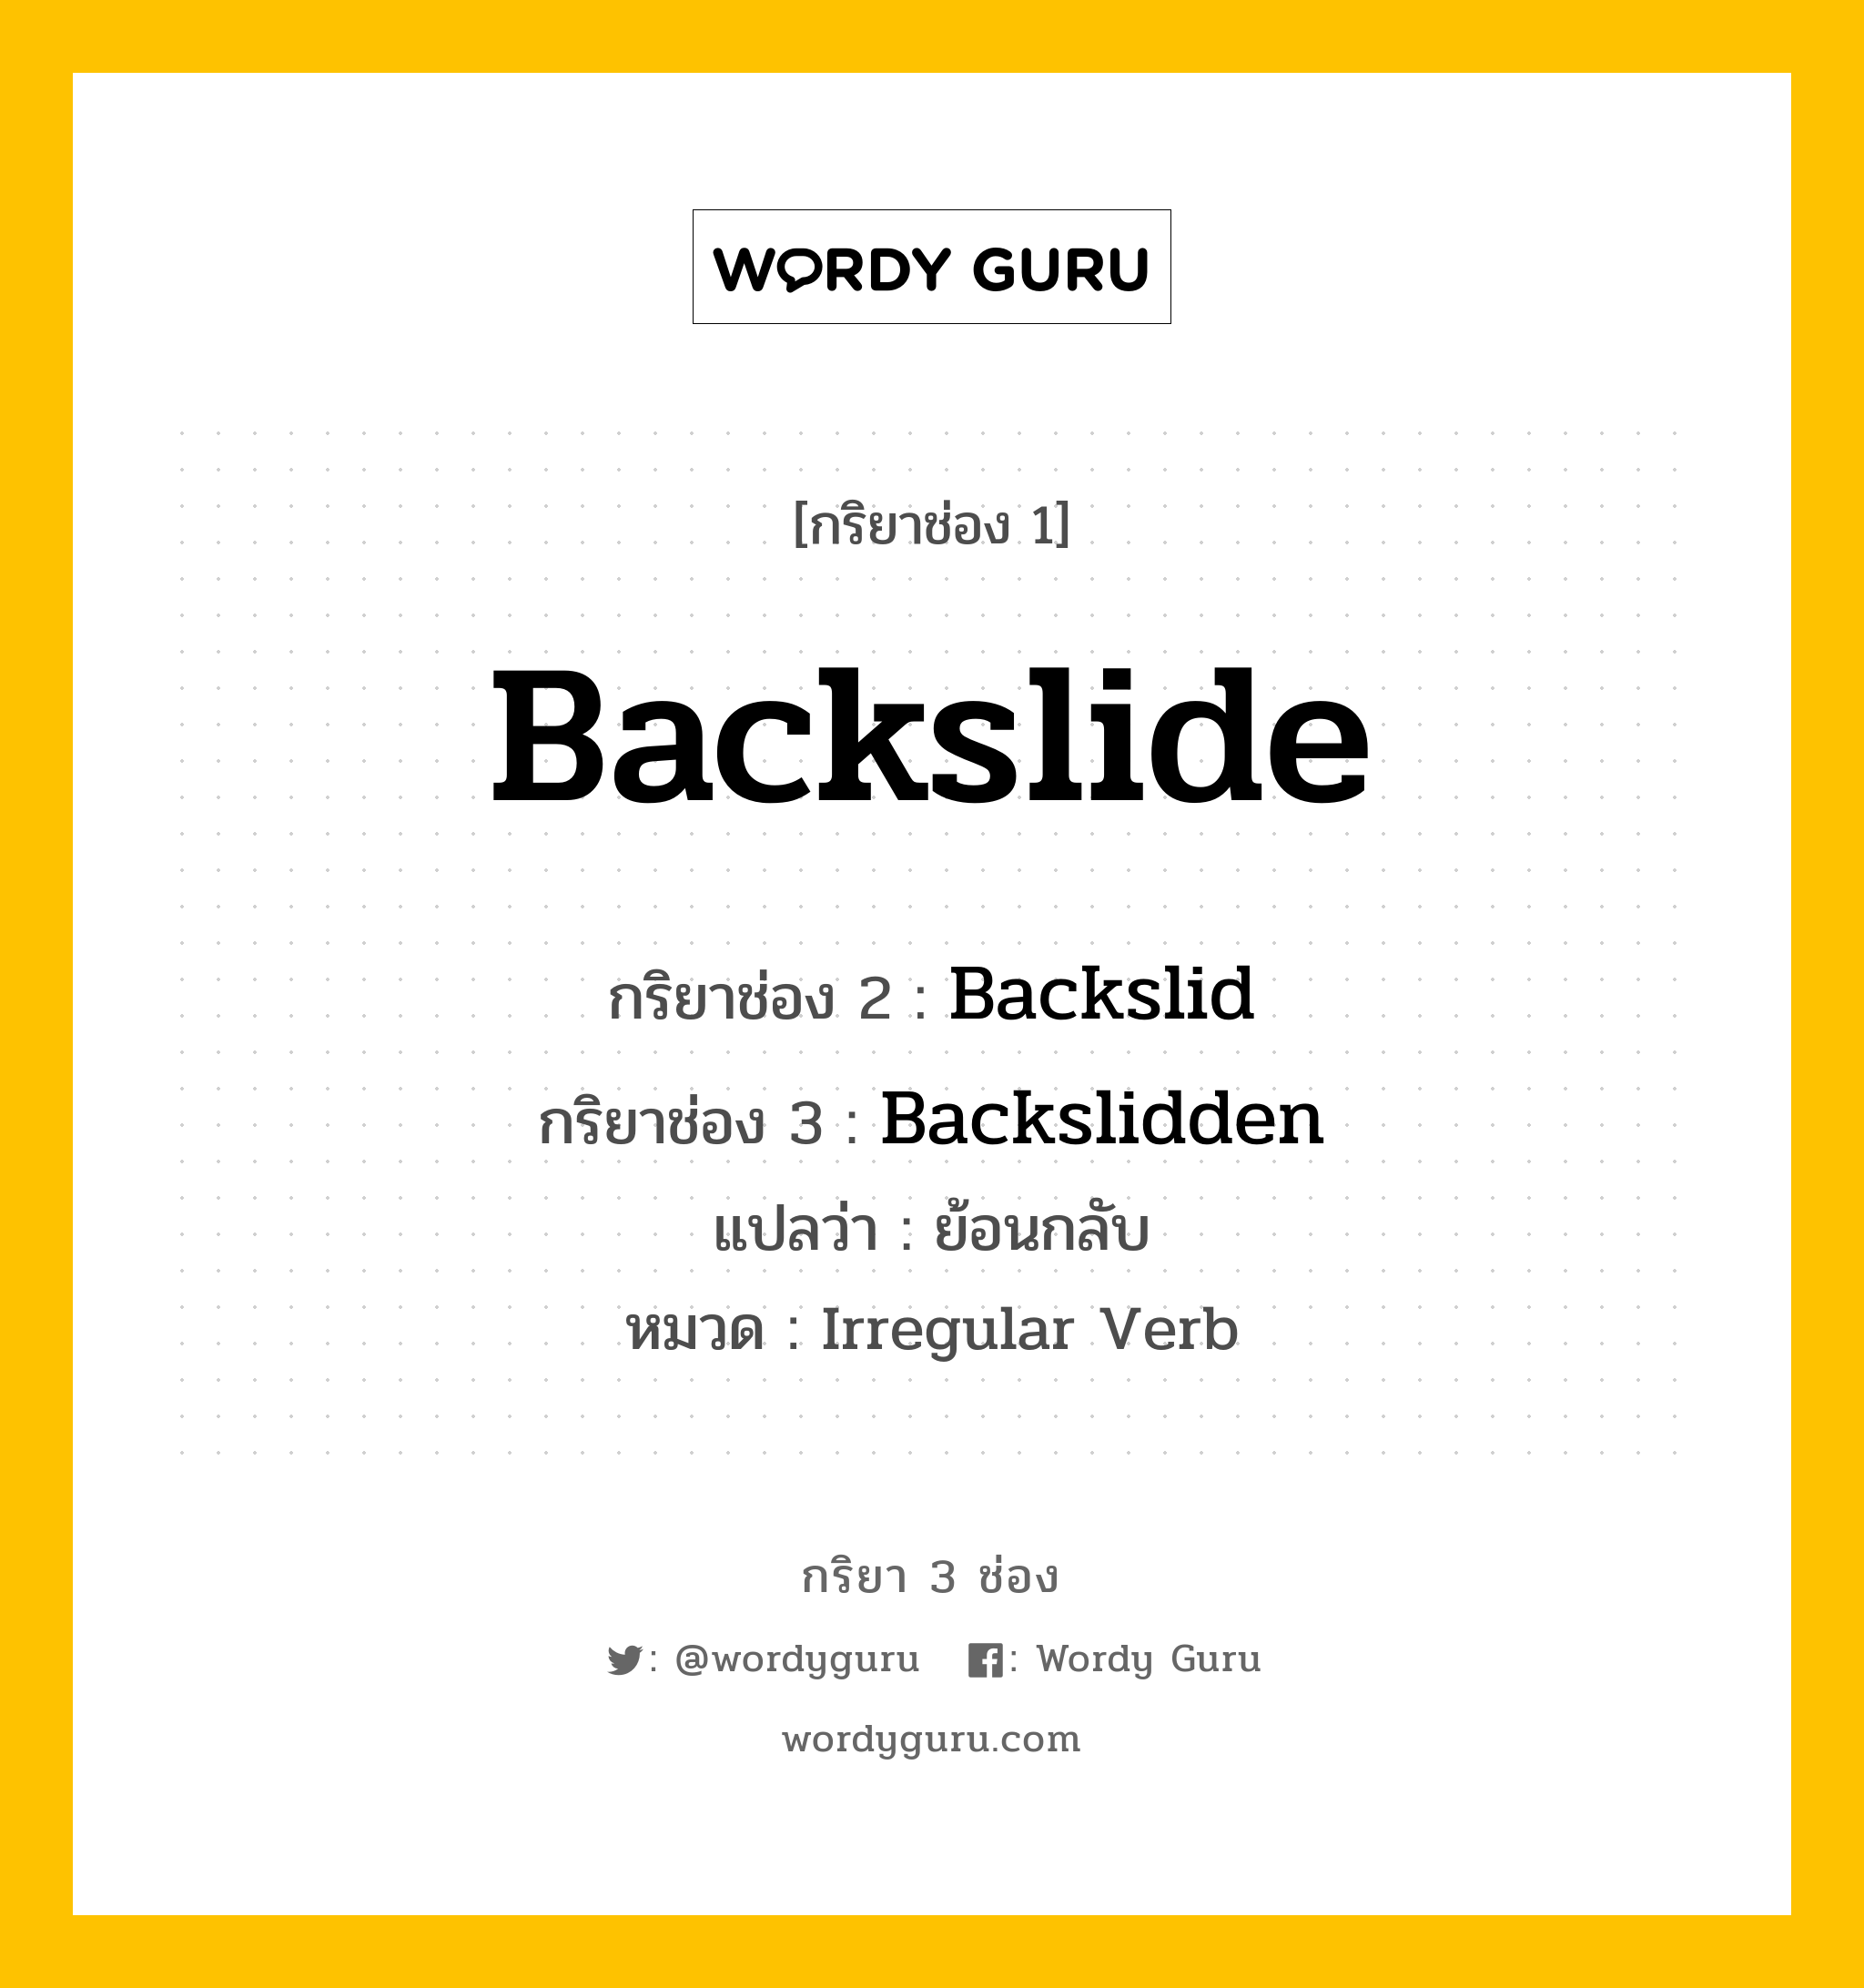 กริยา 3 ช่อง: Backslide ช่อง 2 Backslide ช่อง 3 คืออะไร, กริยาช่อง 1 Backslide กริยาช่อง 2 Backslid กริยาช่อง 3 Backslidden แปลว่า ย้อนกลับ หมวด Irregular Verb หมวด Irregular Verb